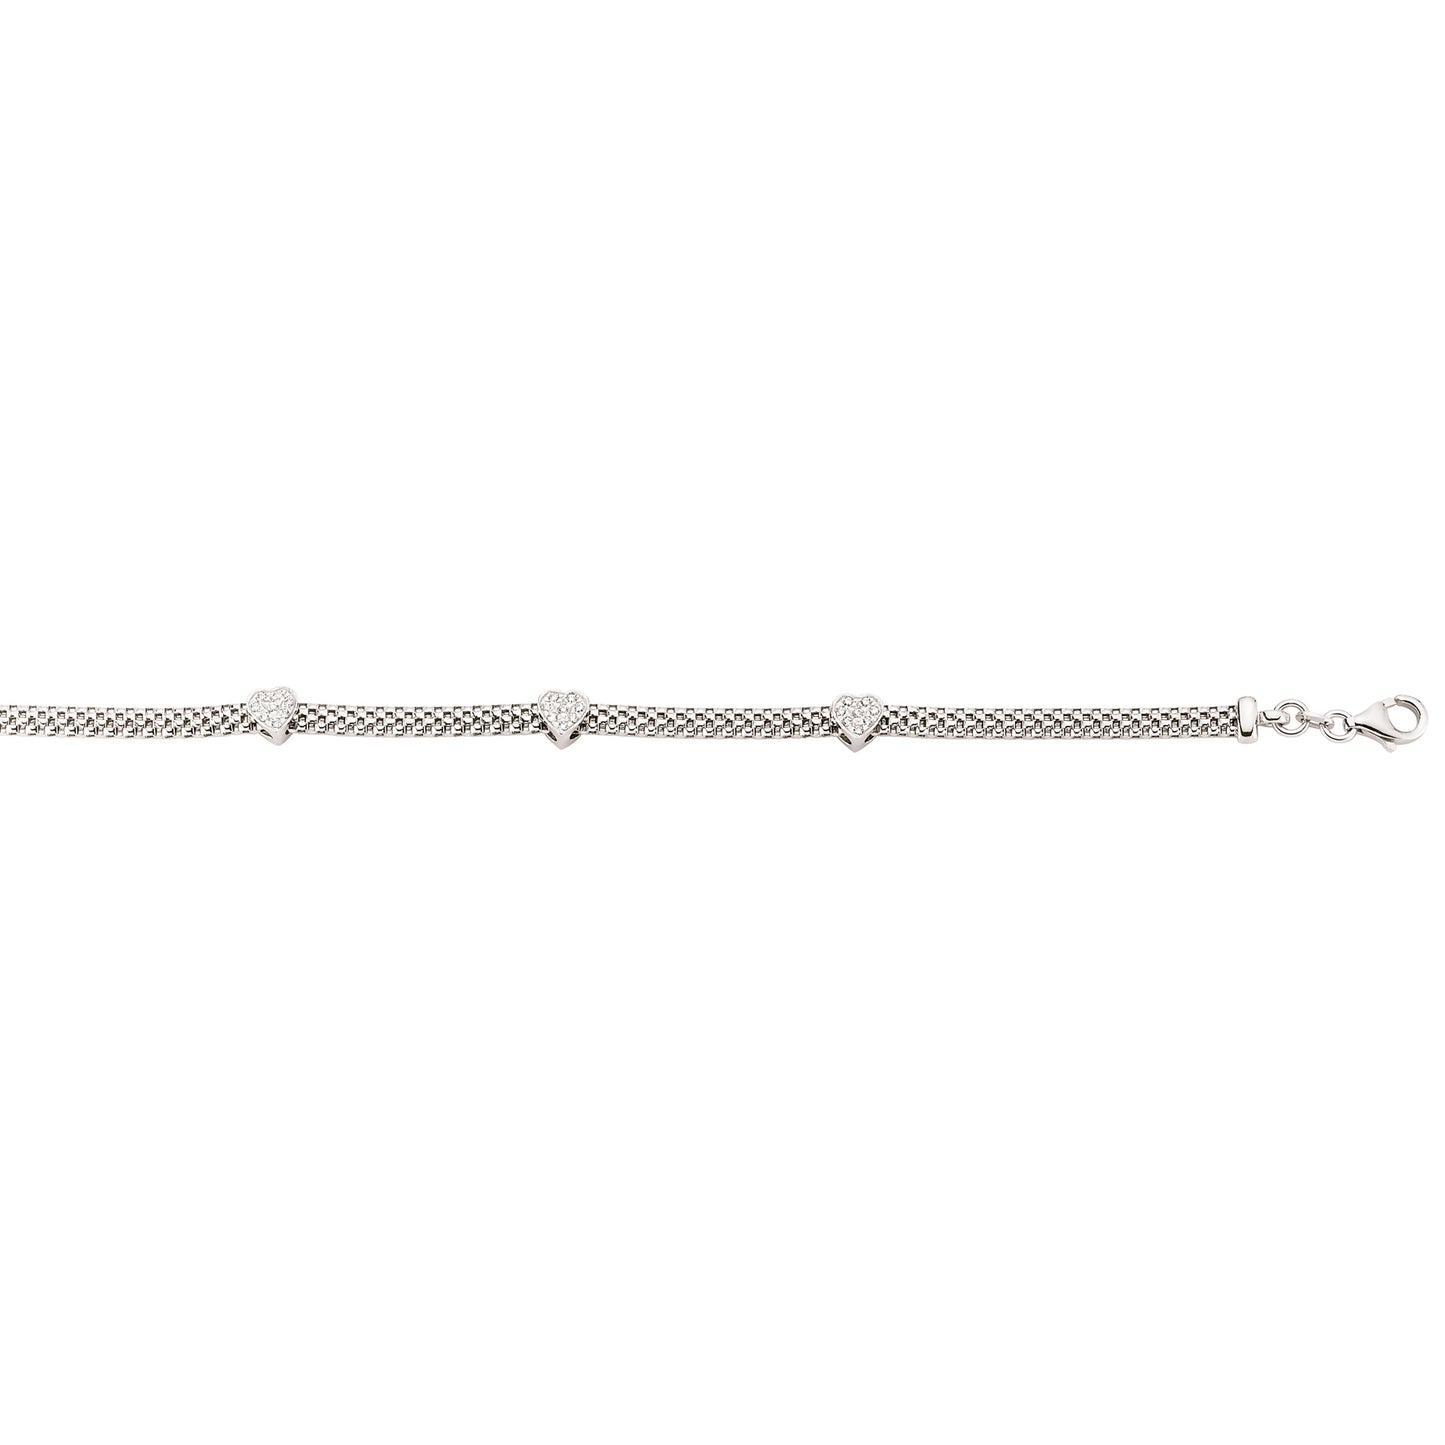 Silver  CZ Correana Pave Heart Bracelet - GVB179RH